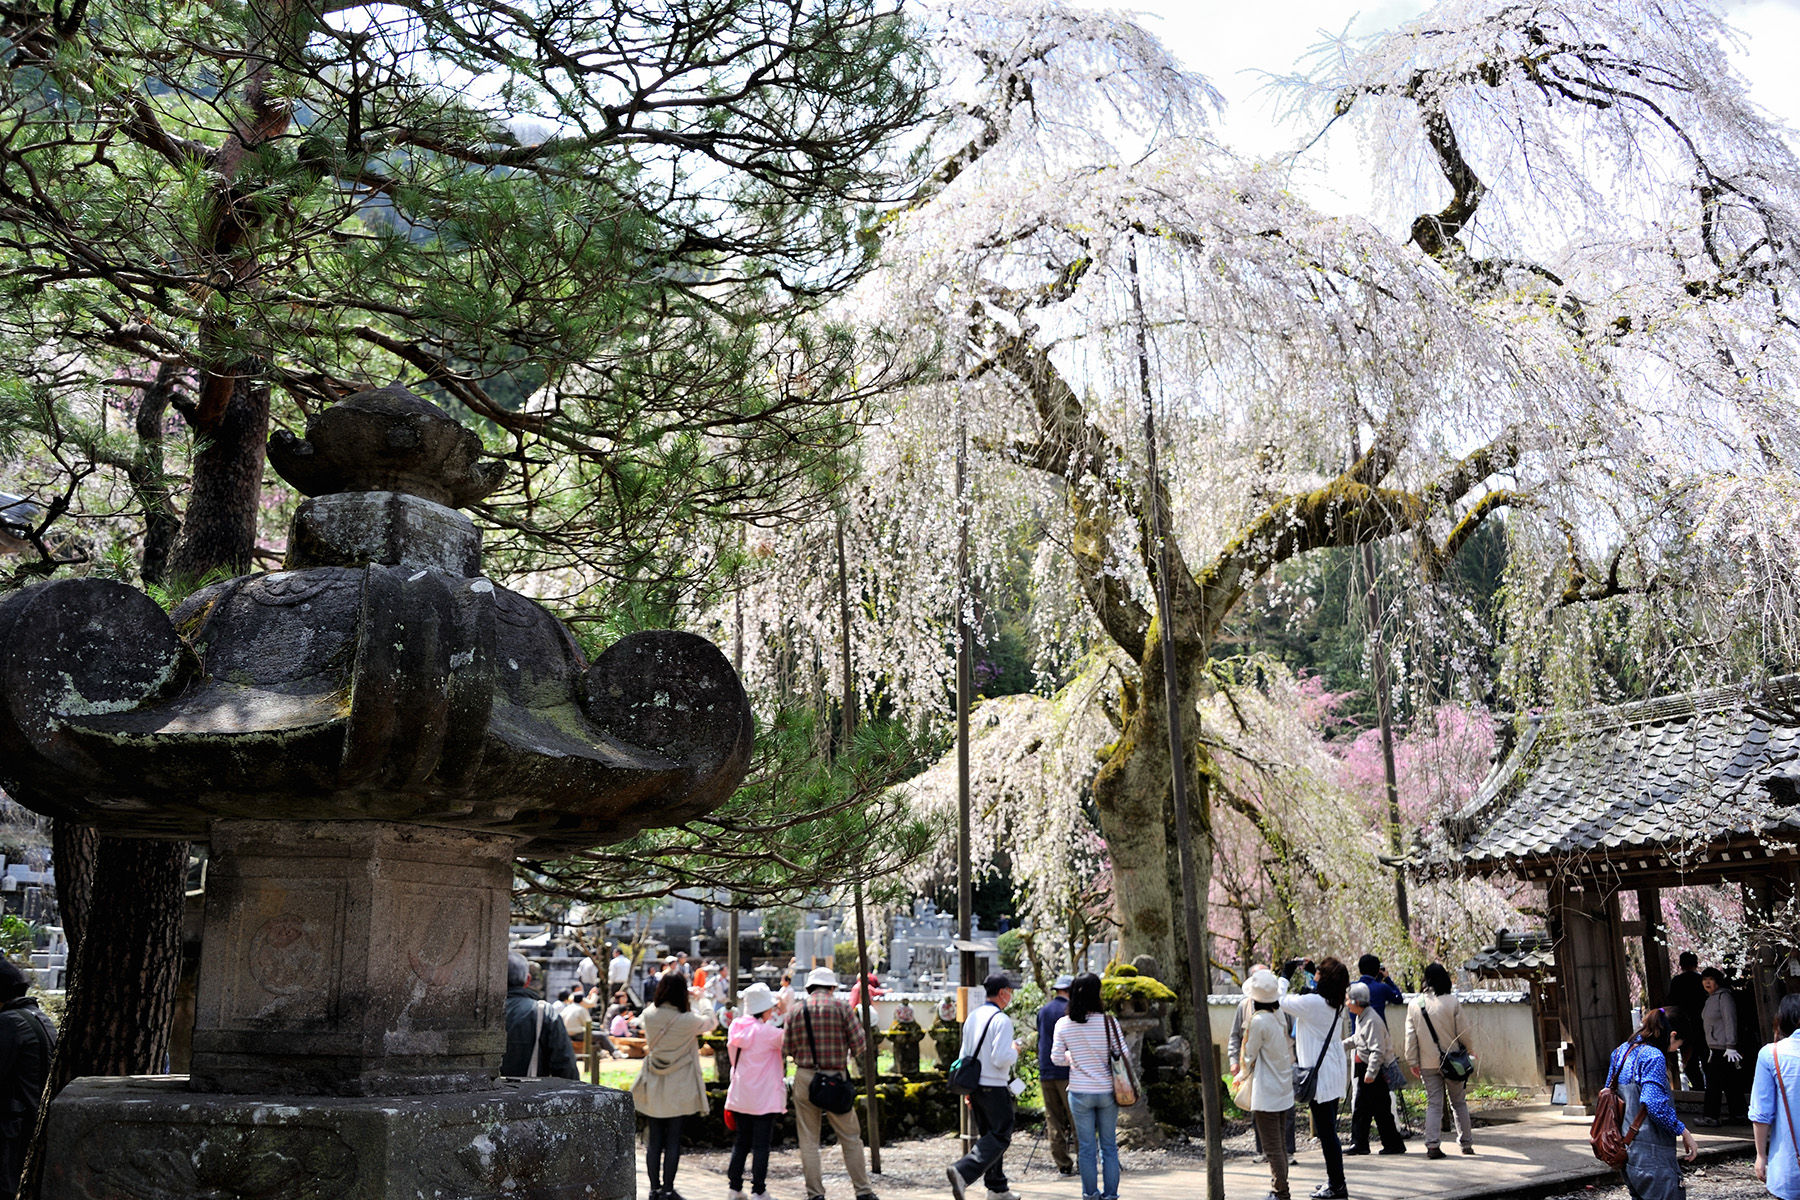 清雲寺の枝垂れ桜